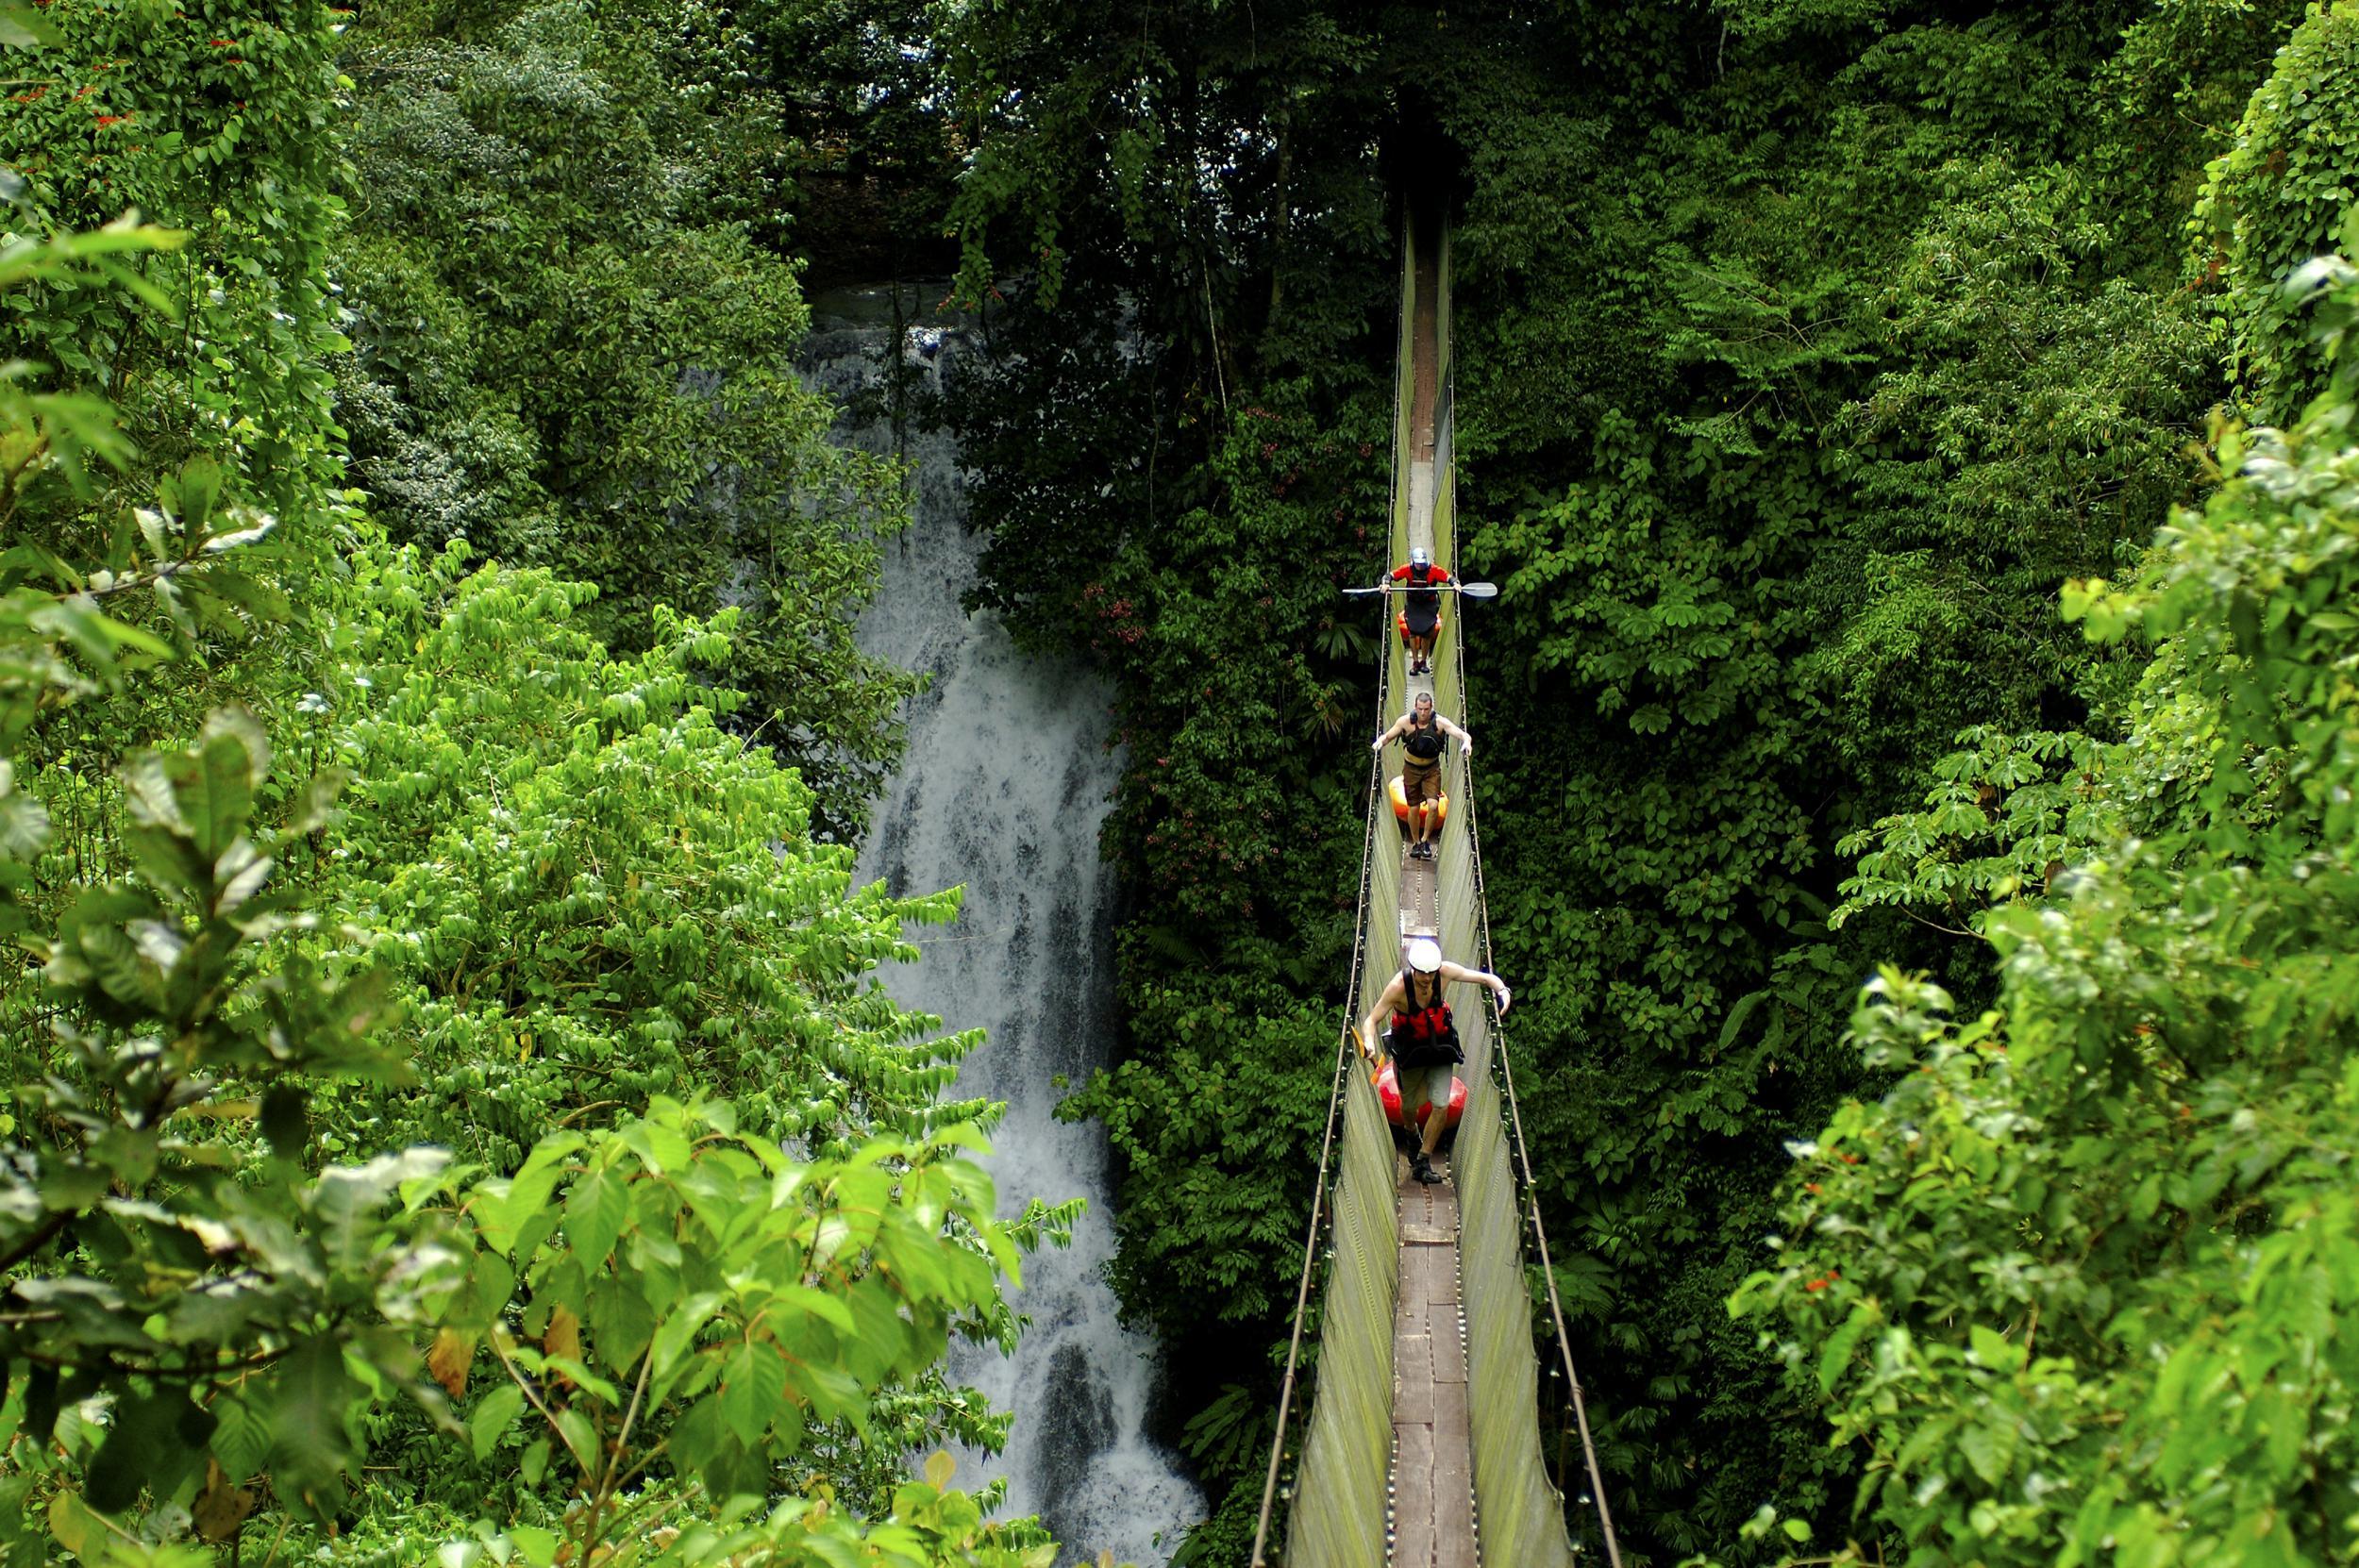 Go wild: head for the jungle in Costa Rica